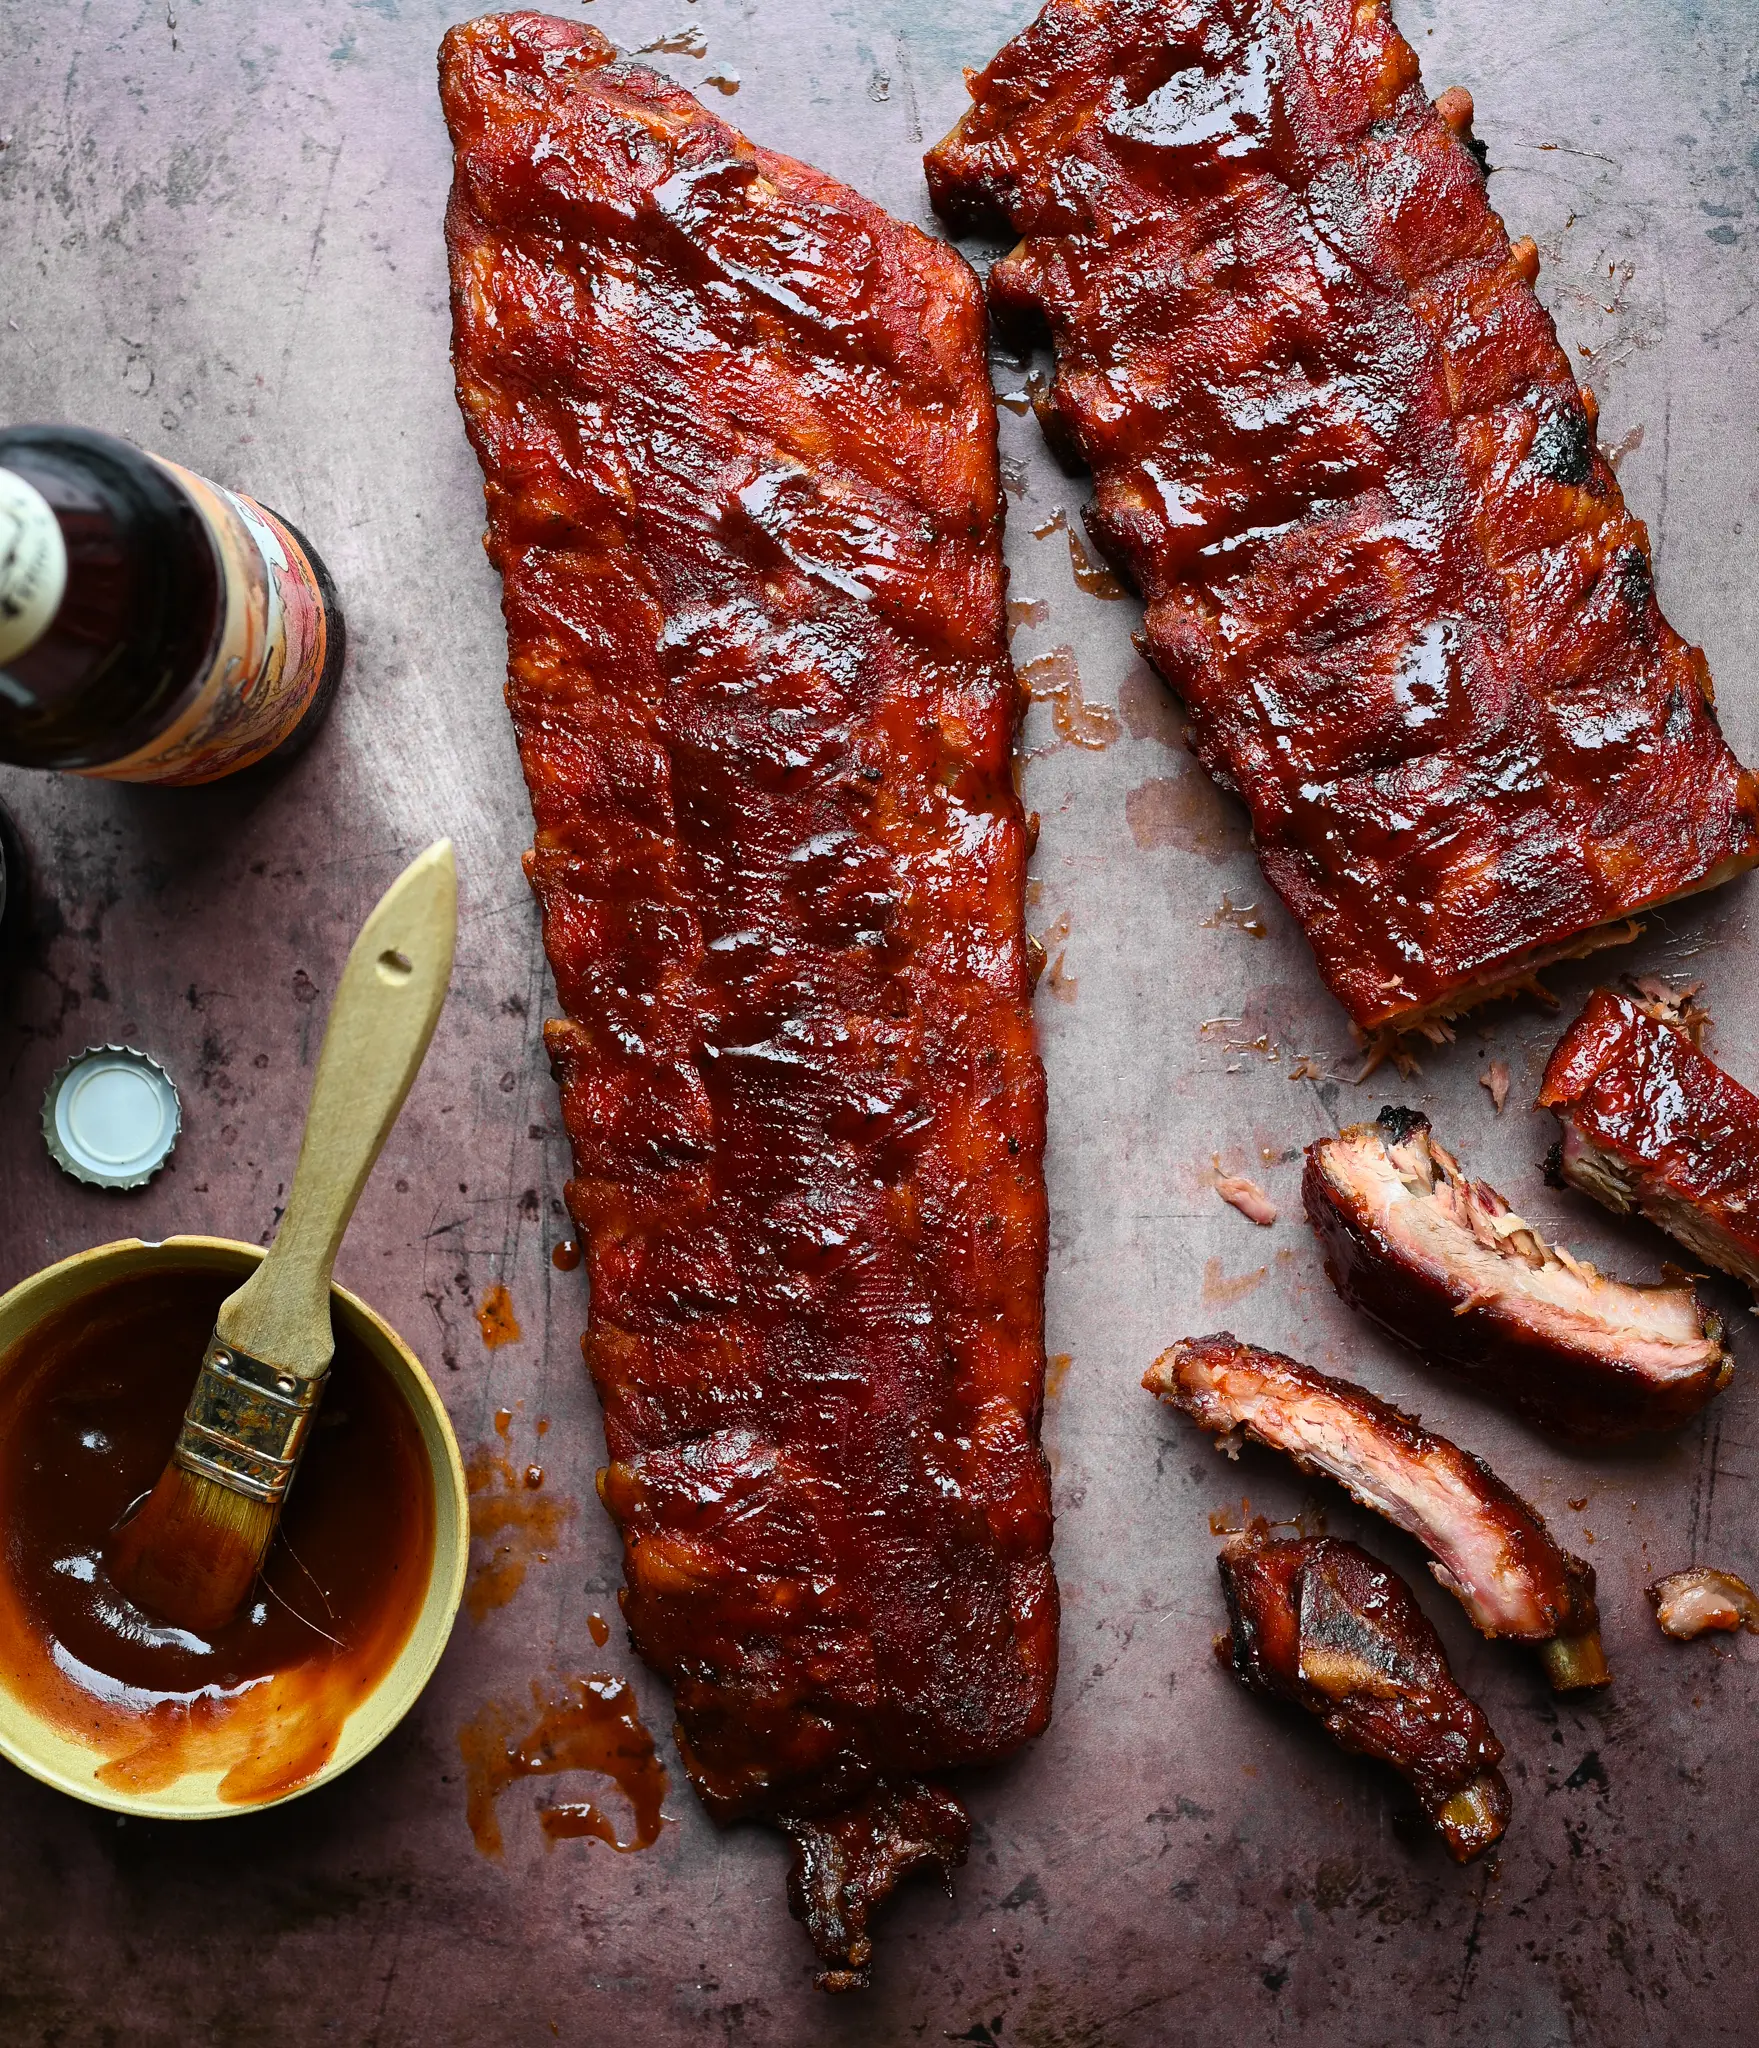 slow smoked pork ribs - How long to smoke pork ribs at 200 degrees